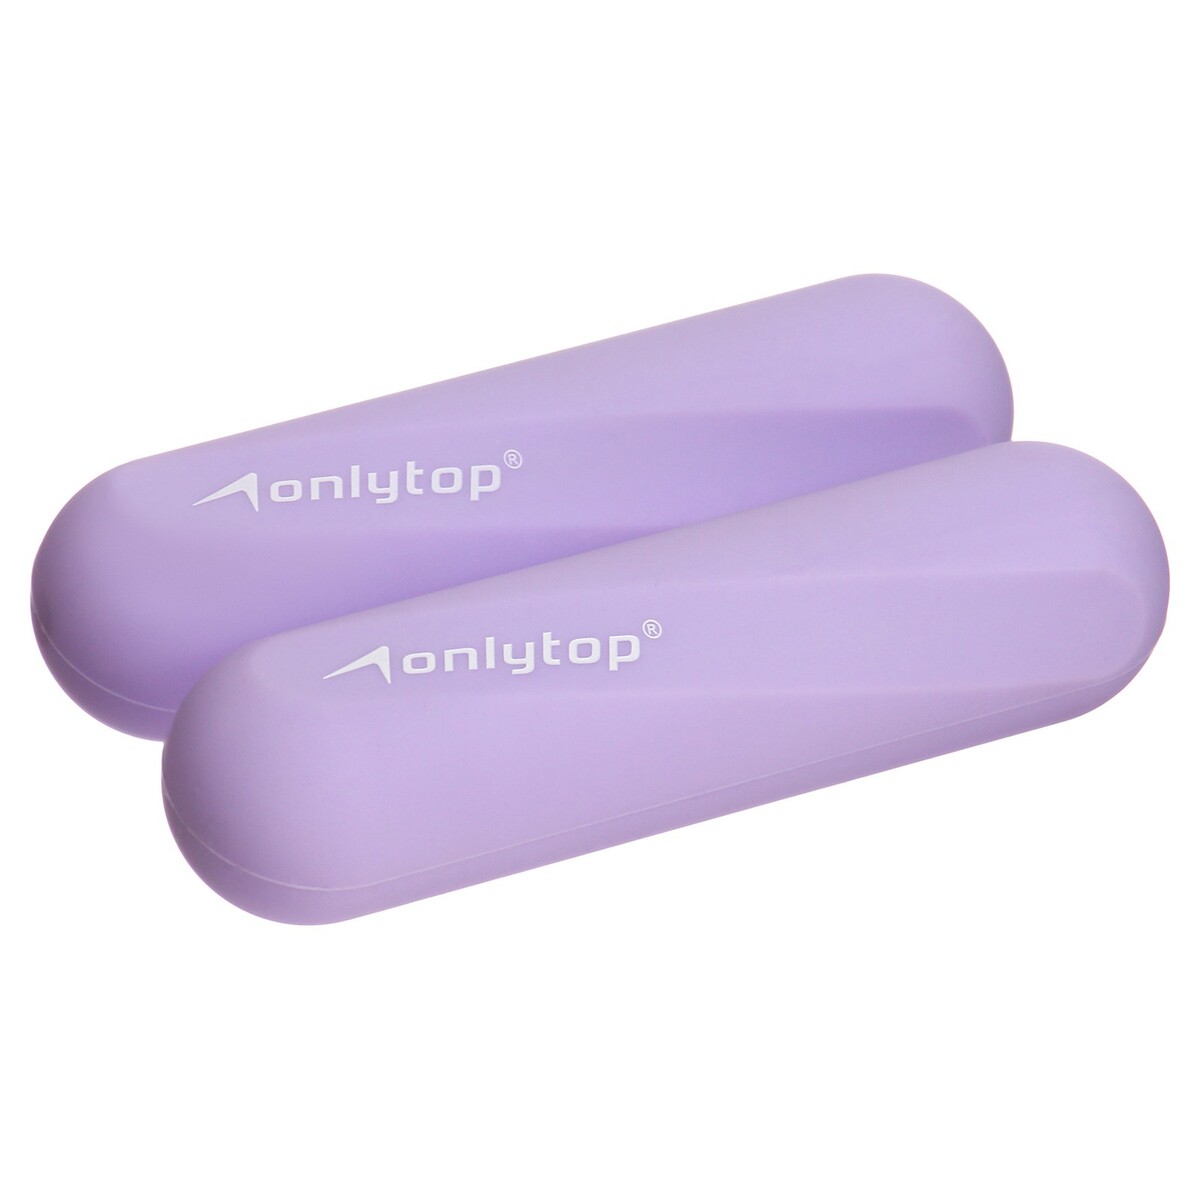 Гантели onlytop для универсального отягощения, 2 шт., 0,5 кг, цвет фиолетовый гантели в уретане 12 кг live pro premium urethane dumbbells lp8000 12